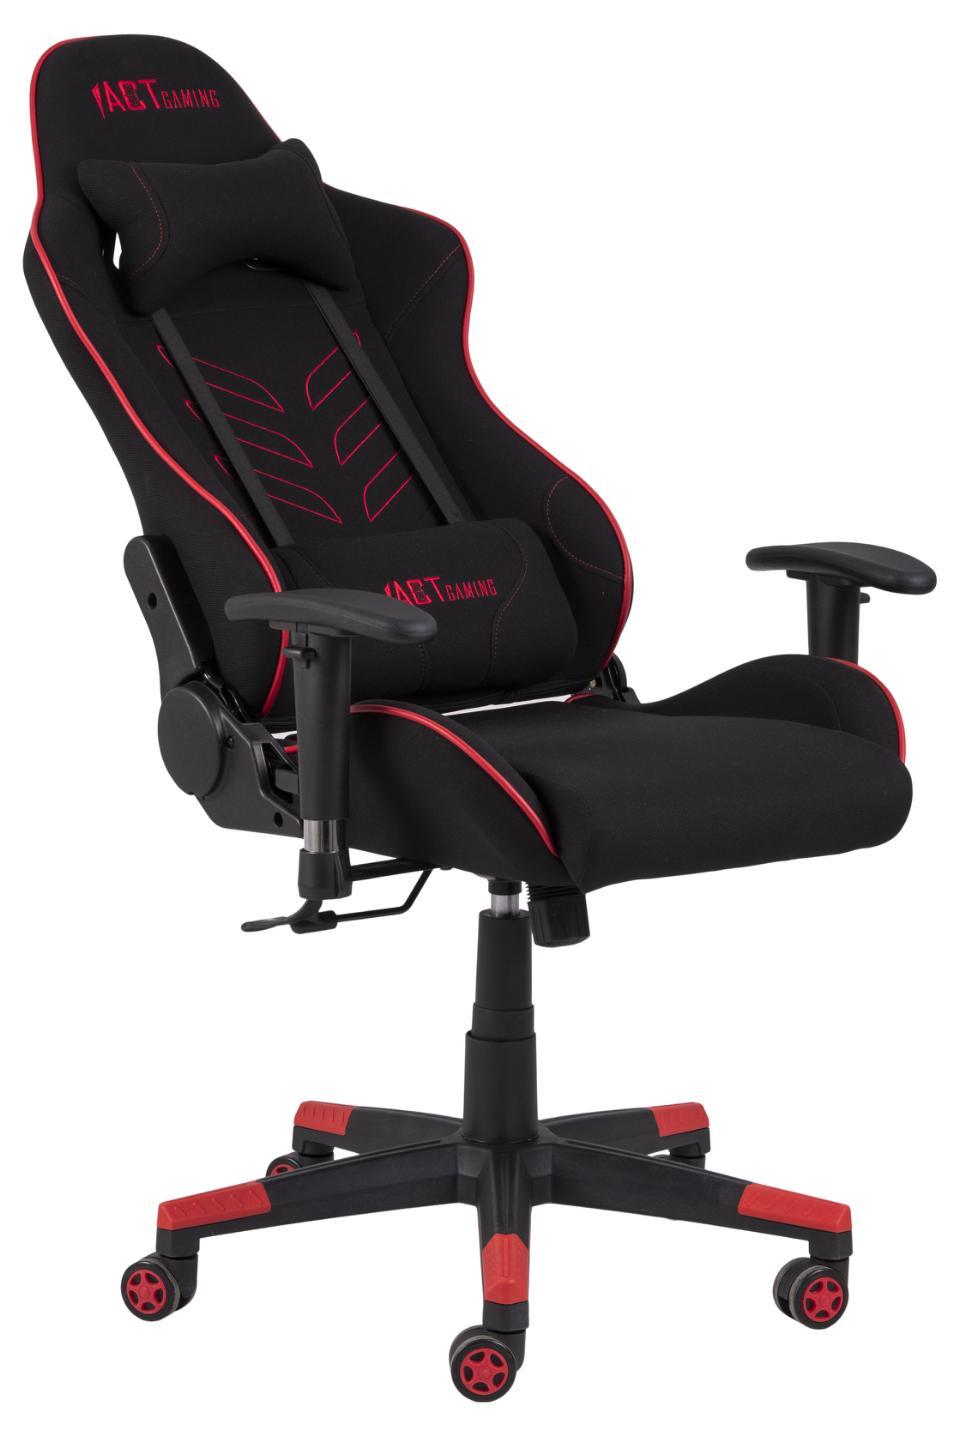 Le modèle Raccoon ACT™ SX est le fauteuil de gaming professionnel 